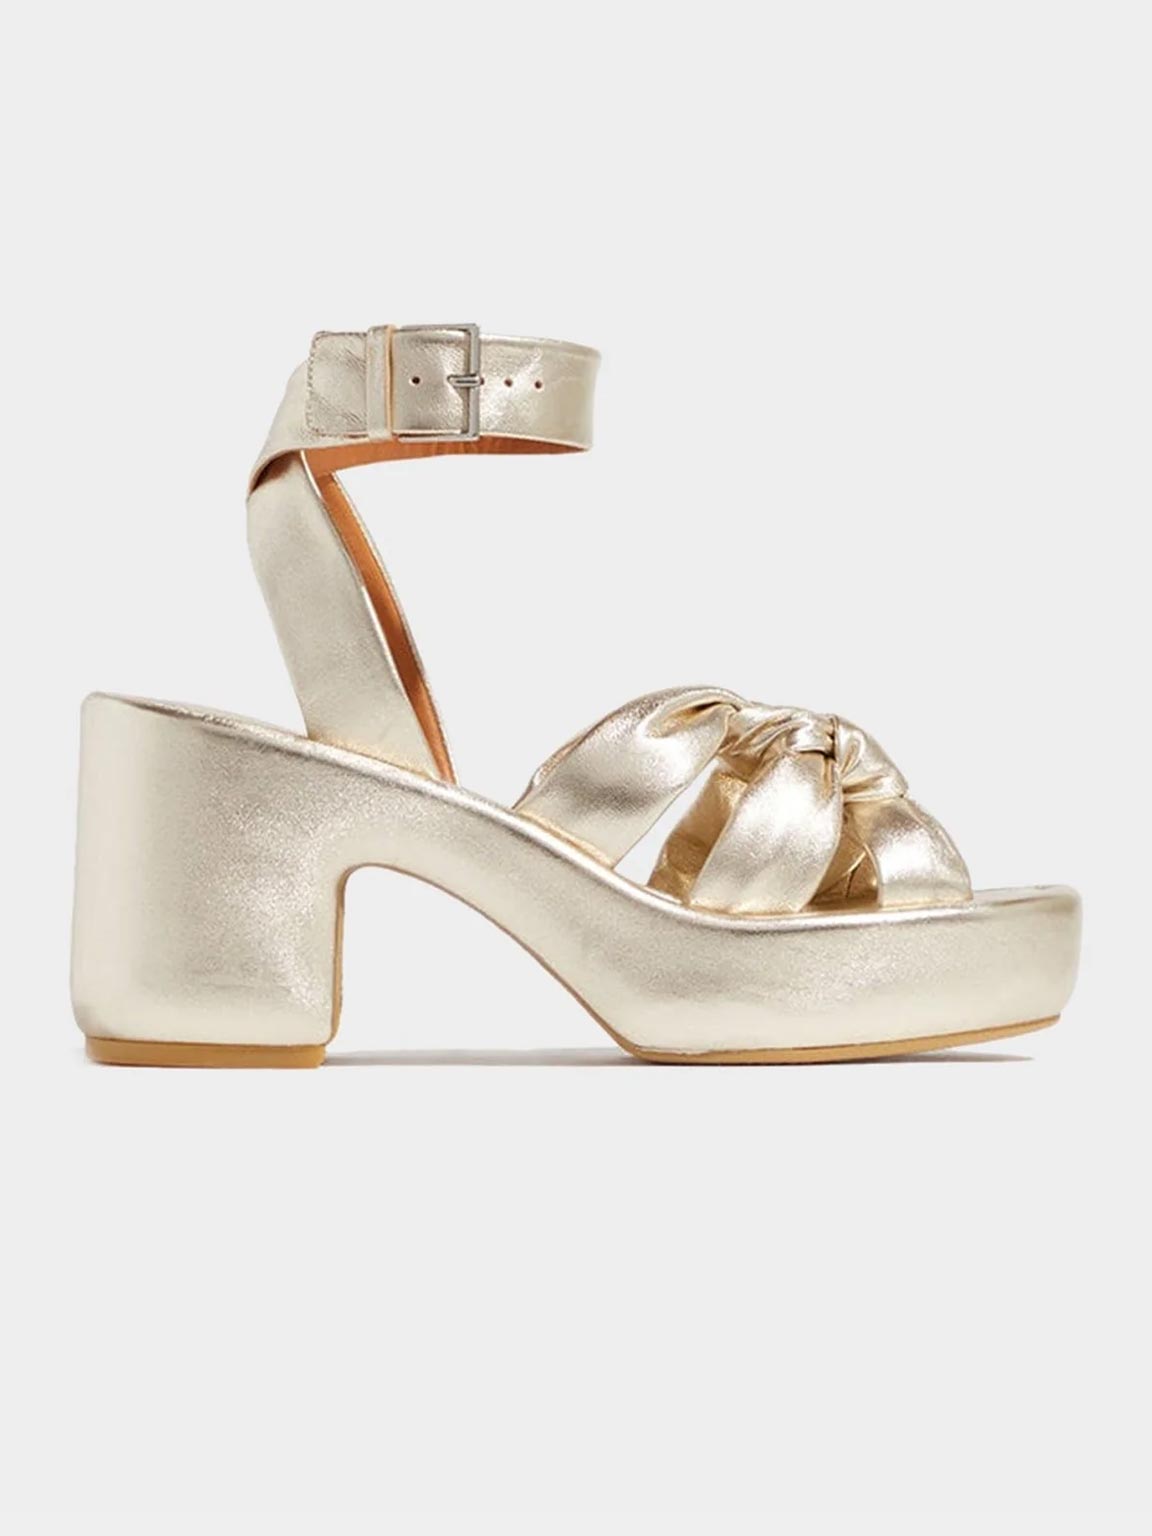 SANDALS - DAYNA sandals, lambskin beige metal - 3606063508452 - Clergerie Paris - Europe